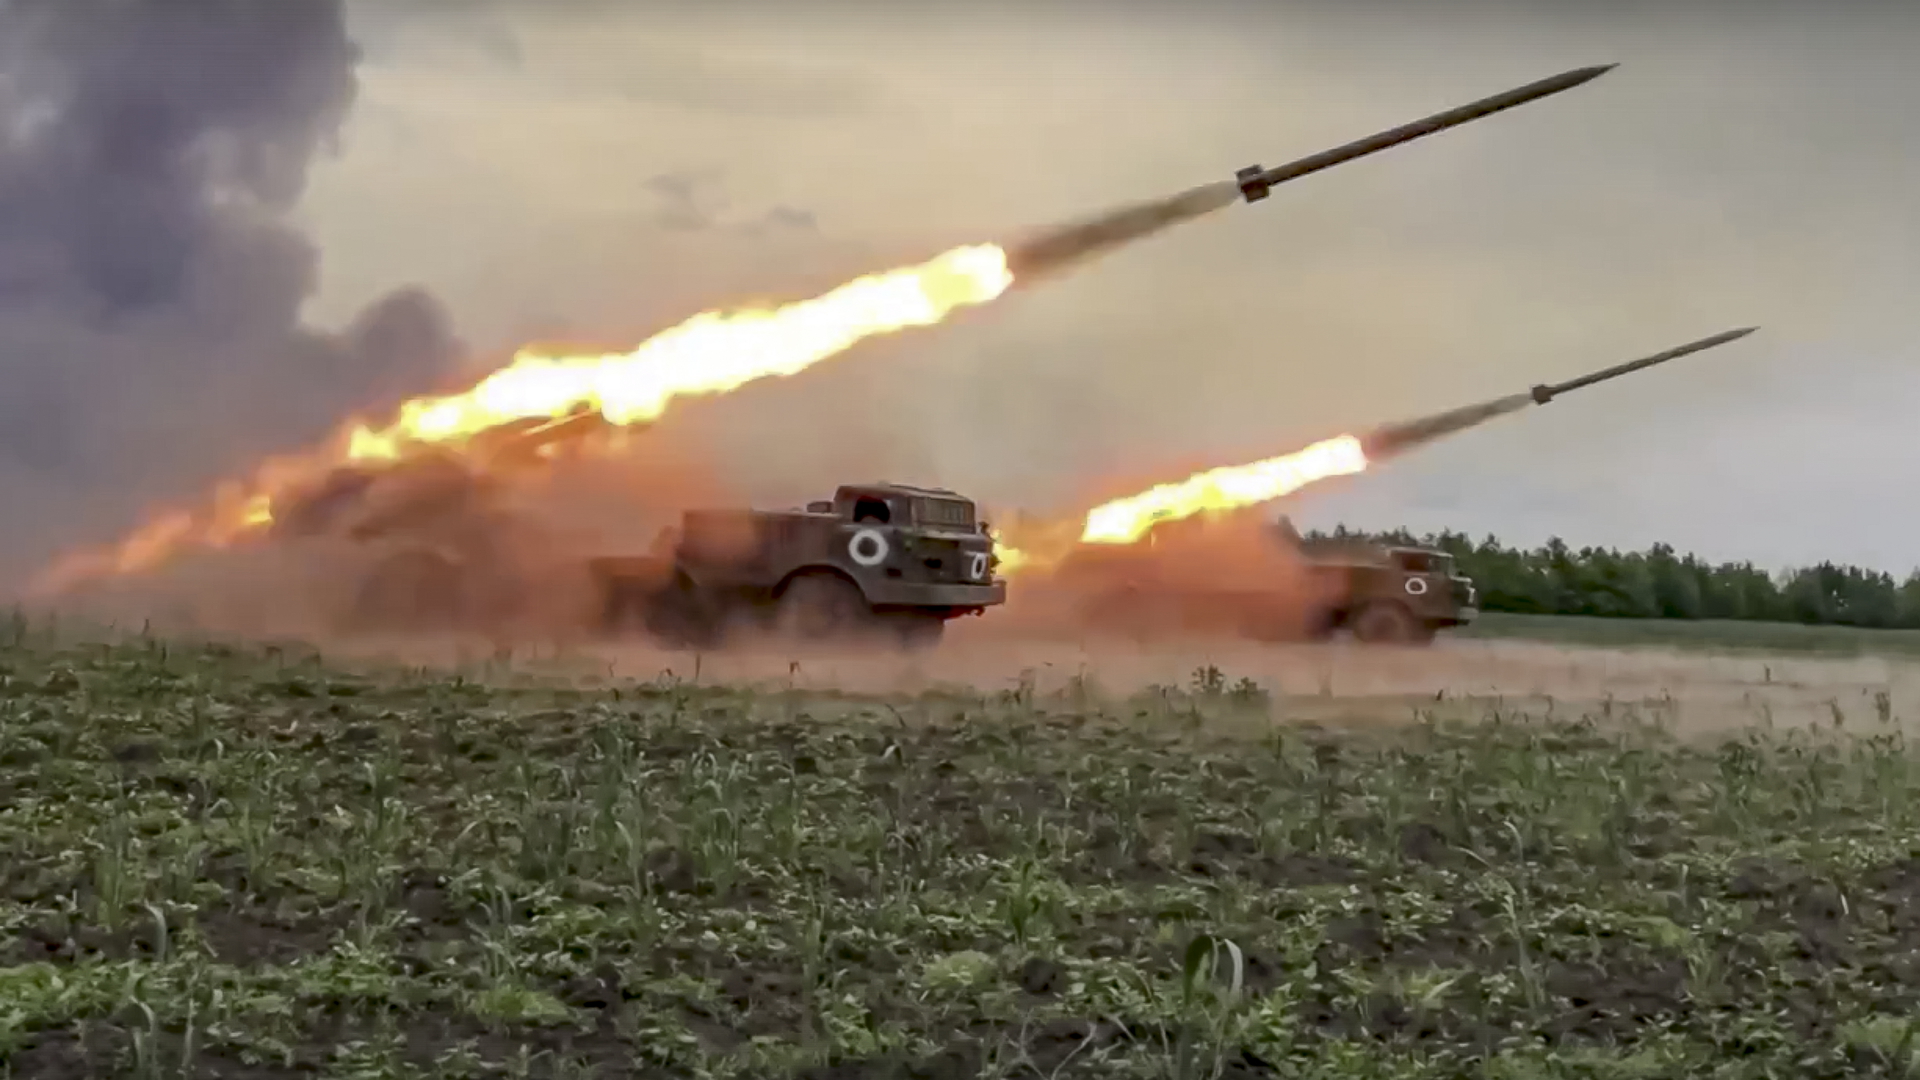 Uragan-Mehrfachraketenwerfer des russischen Militärs feuern Raketen auf ukrainische Truppen an einem ungenannten Ort. | dpa